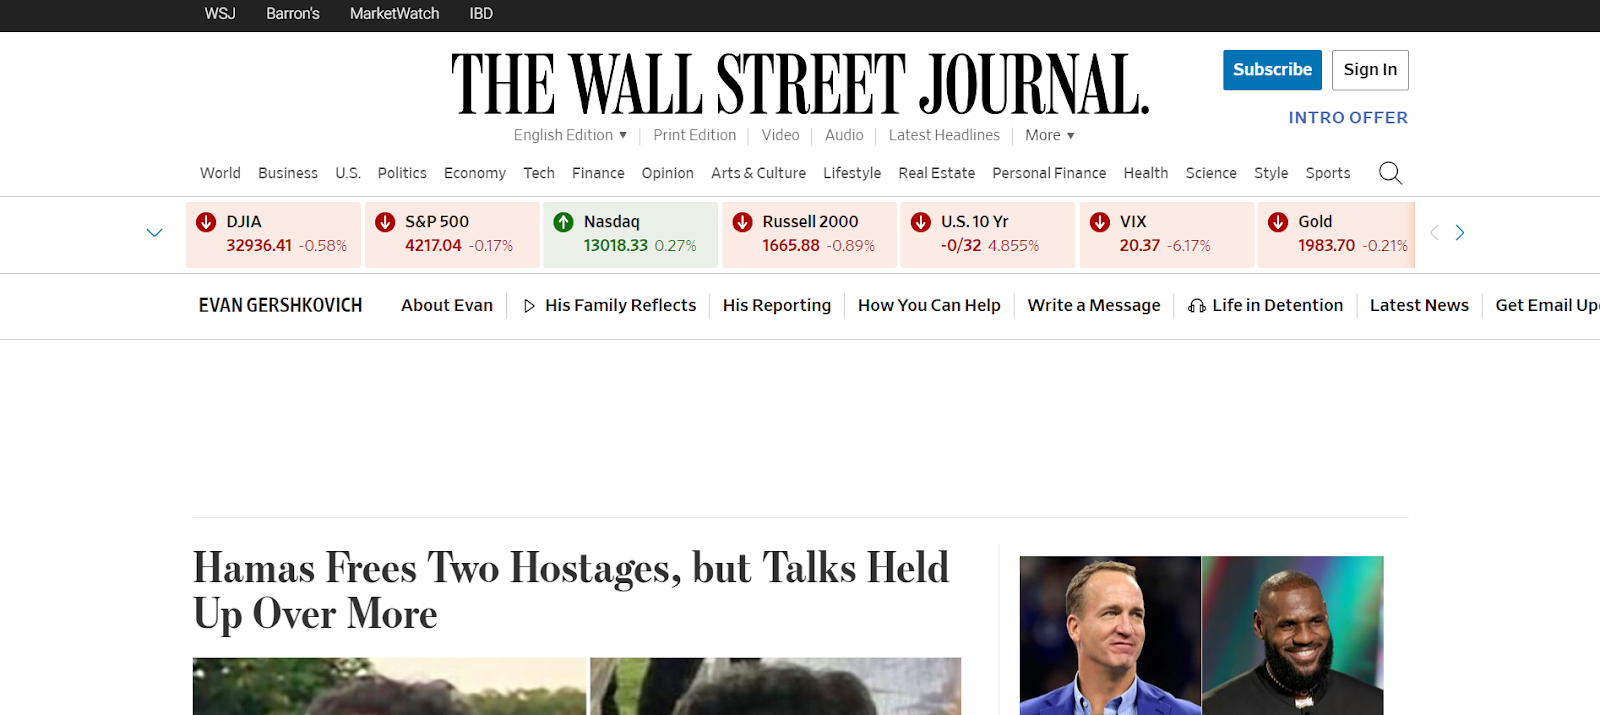 9. Wall Street Journal